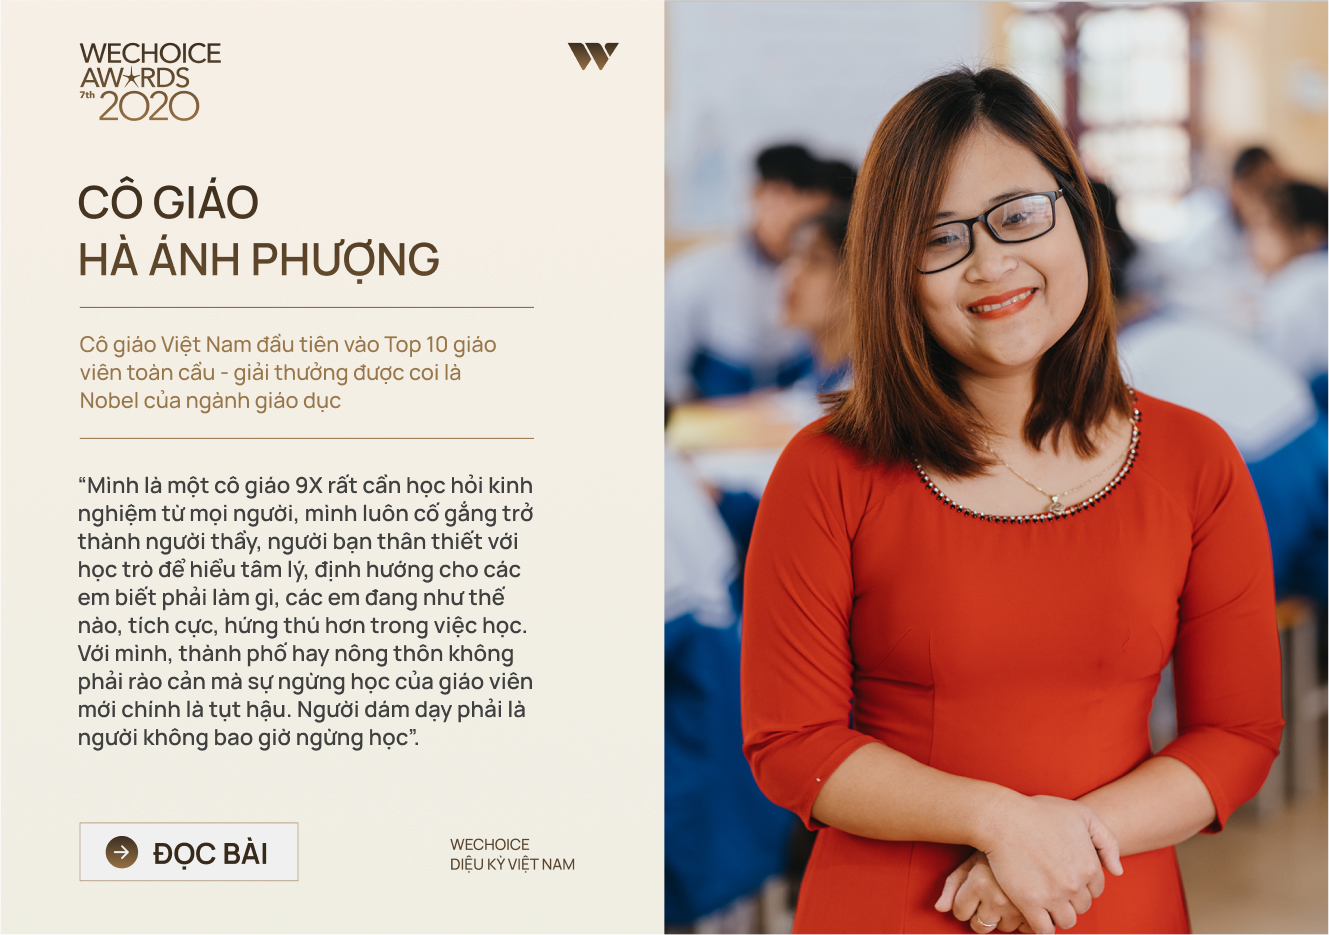 20 đề cử nhân vật truyền cảm hứng của WeChoice Awards 2020: Những câu chuyện tạo nên Diệu kỳ Việt Nam - Ảnh 16.